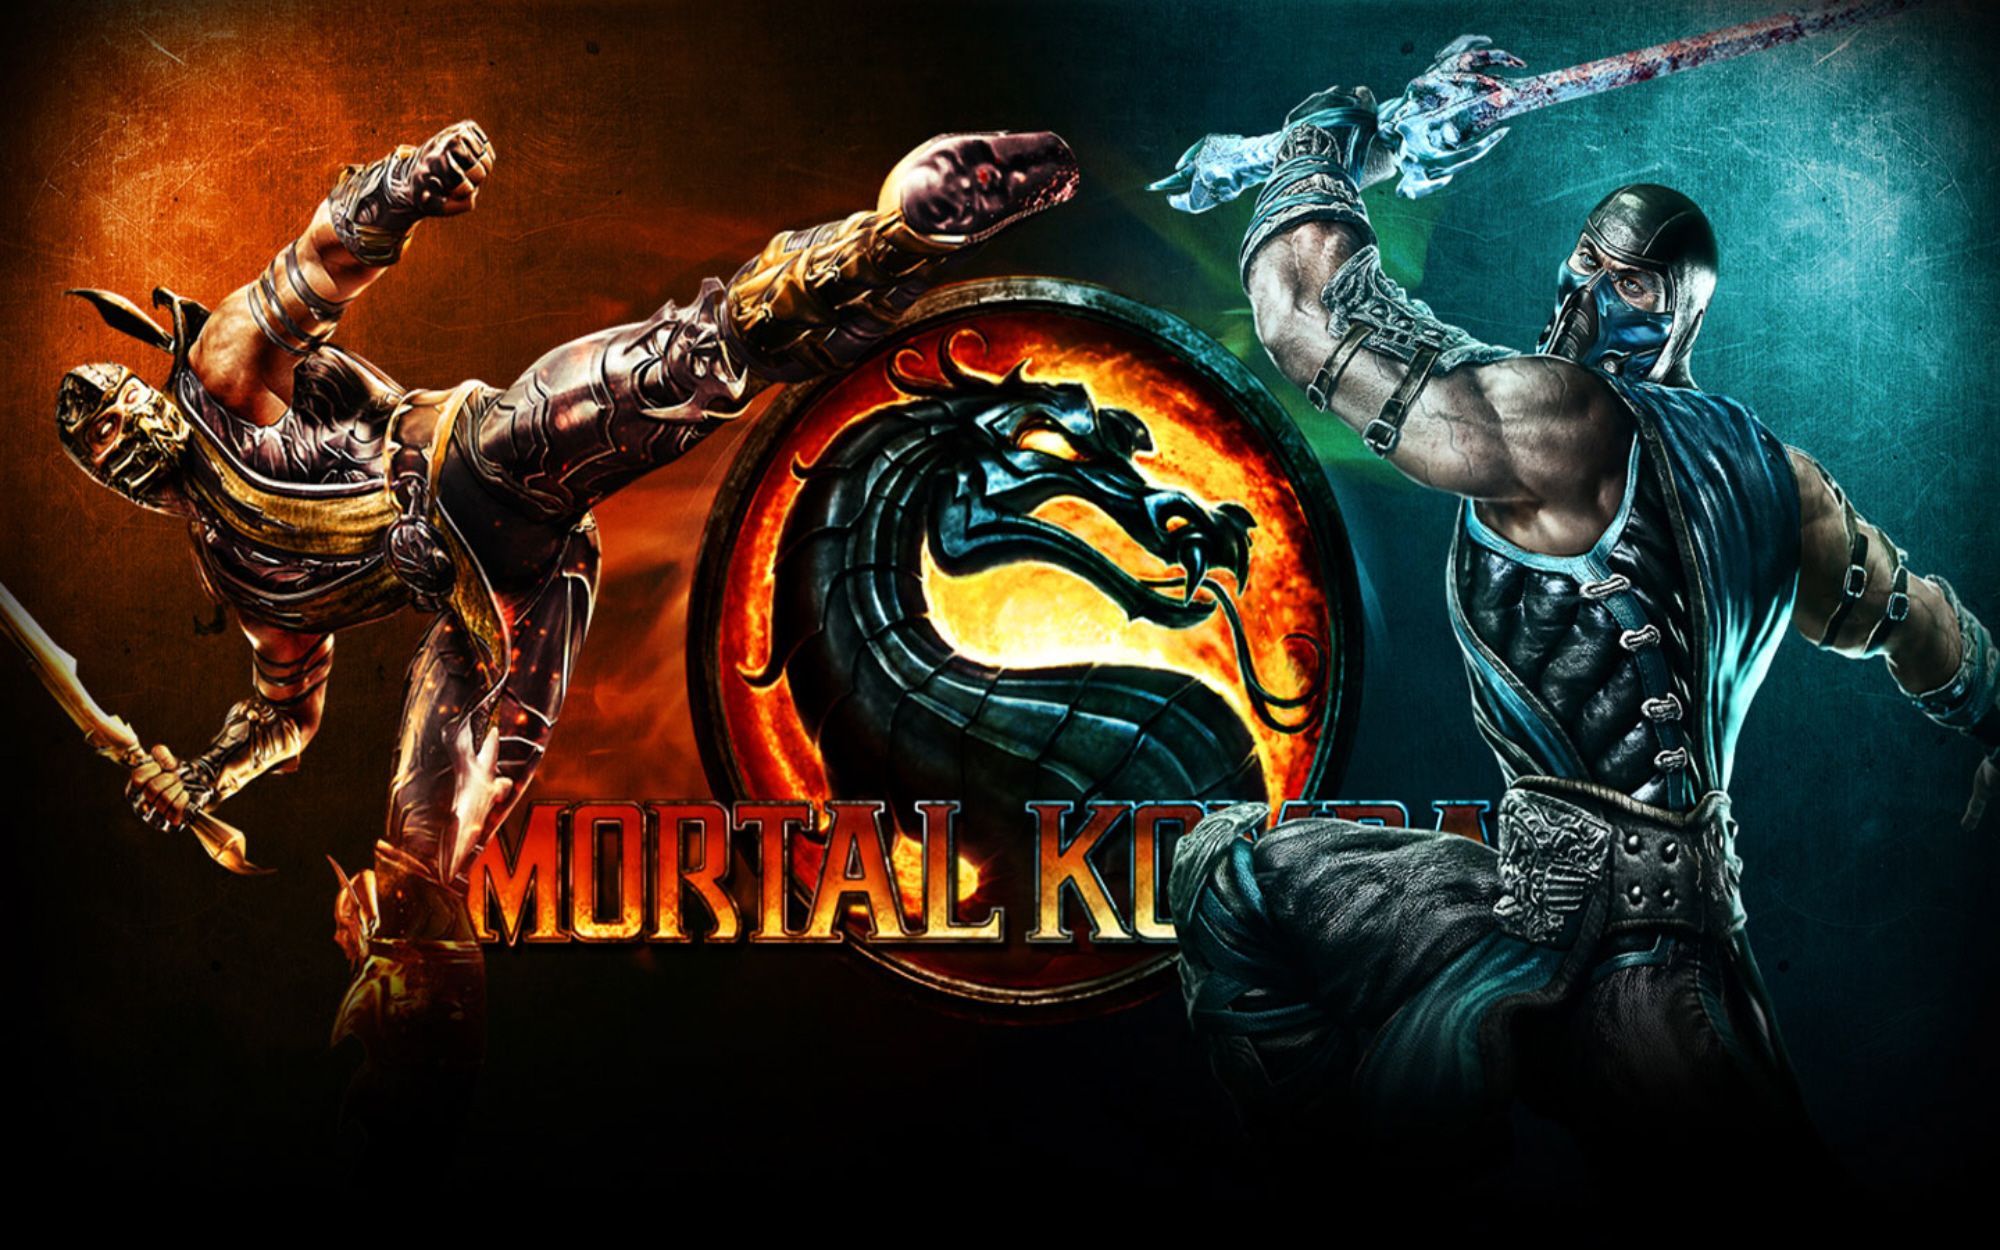 Mortal kombat 2011 versus wallpaper